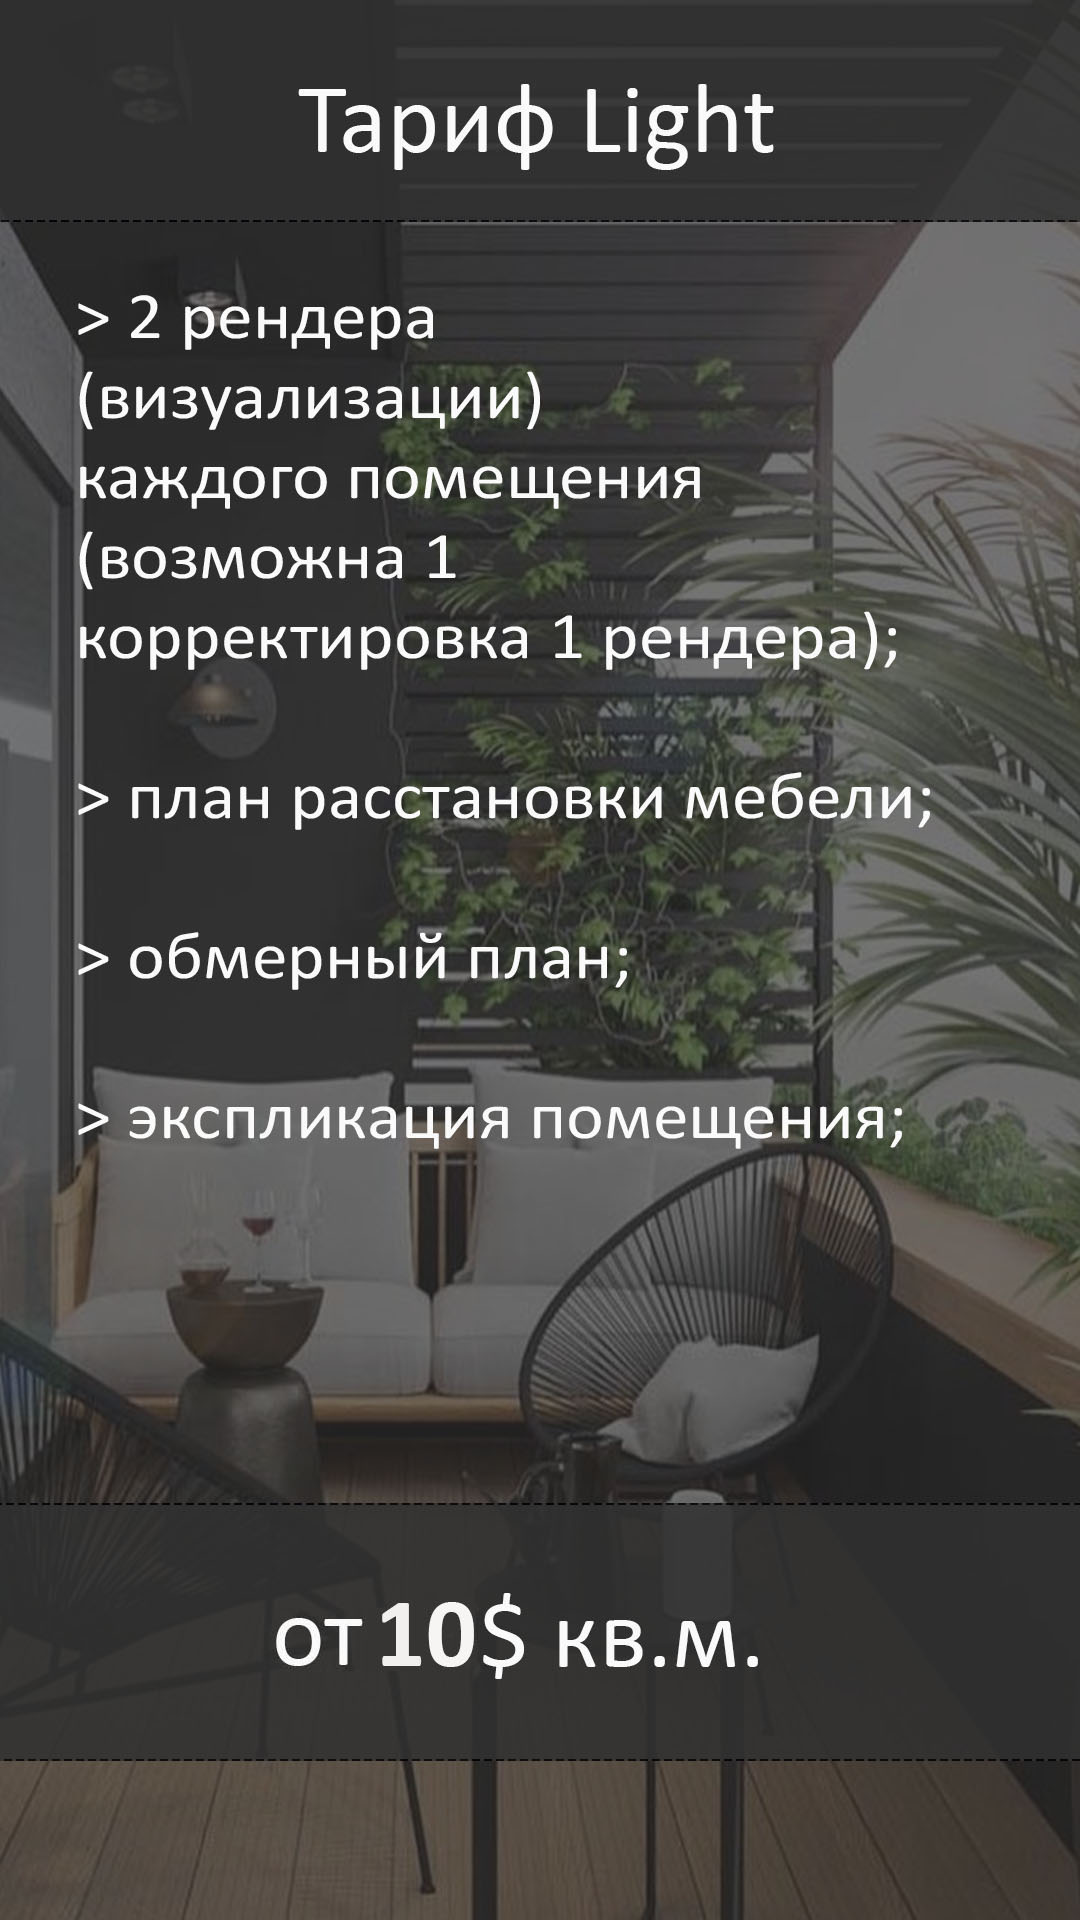 Продажа 5-комнатной квартиры улучшенной планировки в Минске в микрорайоне Малиновка - Realt